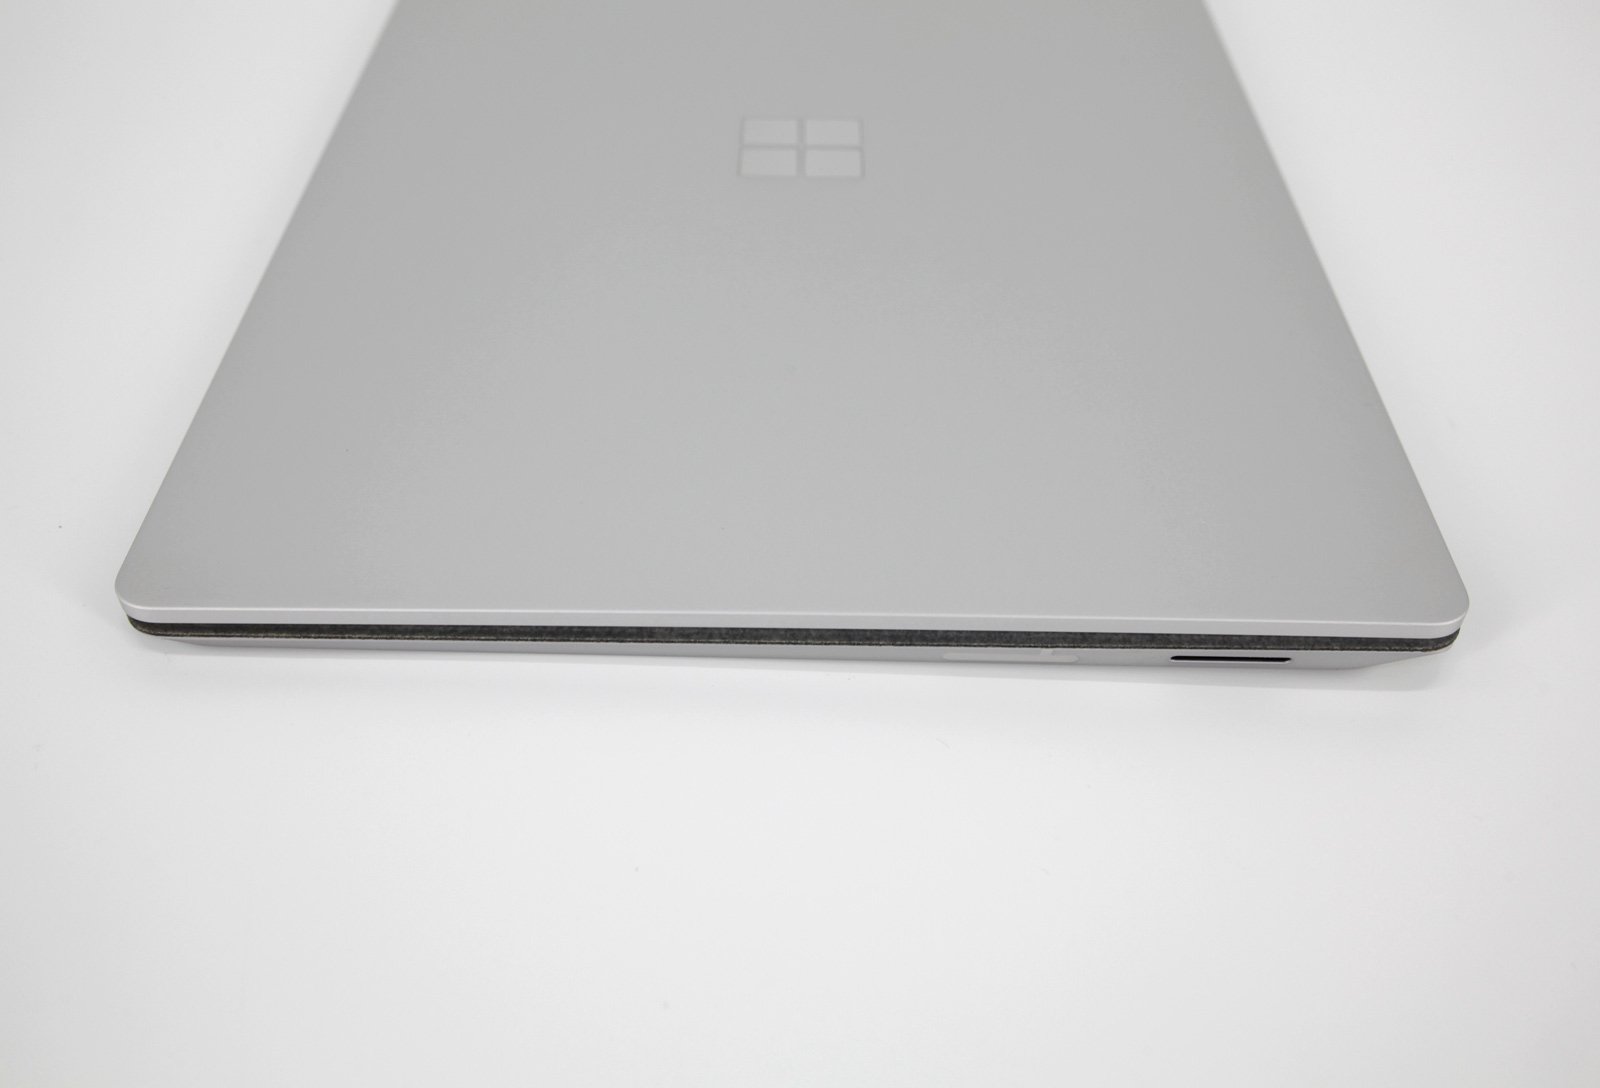 Microsoft Surface Laptop 2: Core i5-8250U, 8GB RAM, 128GB SSD - CruiseTech